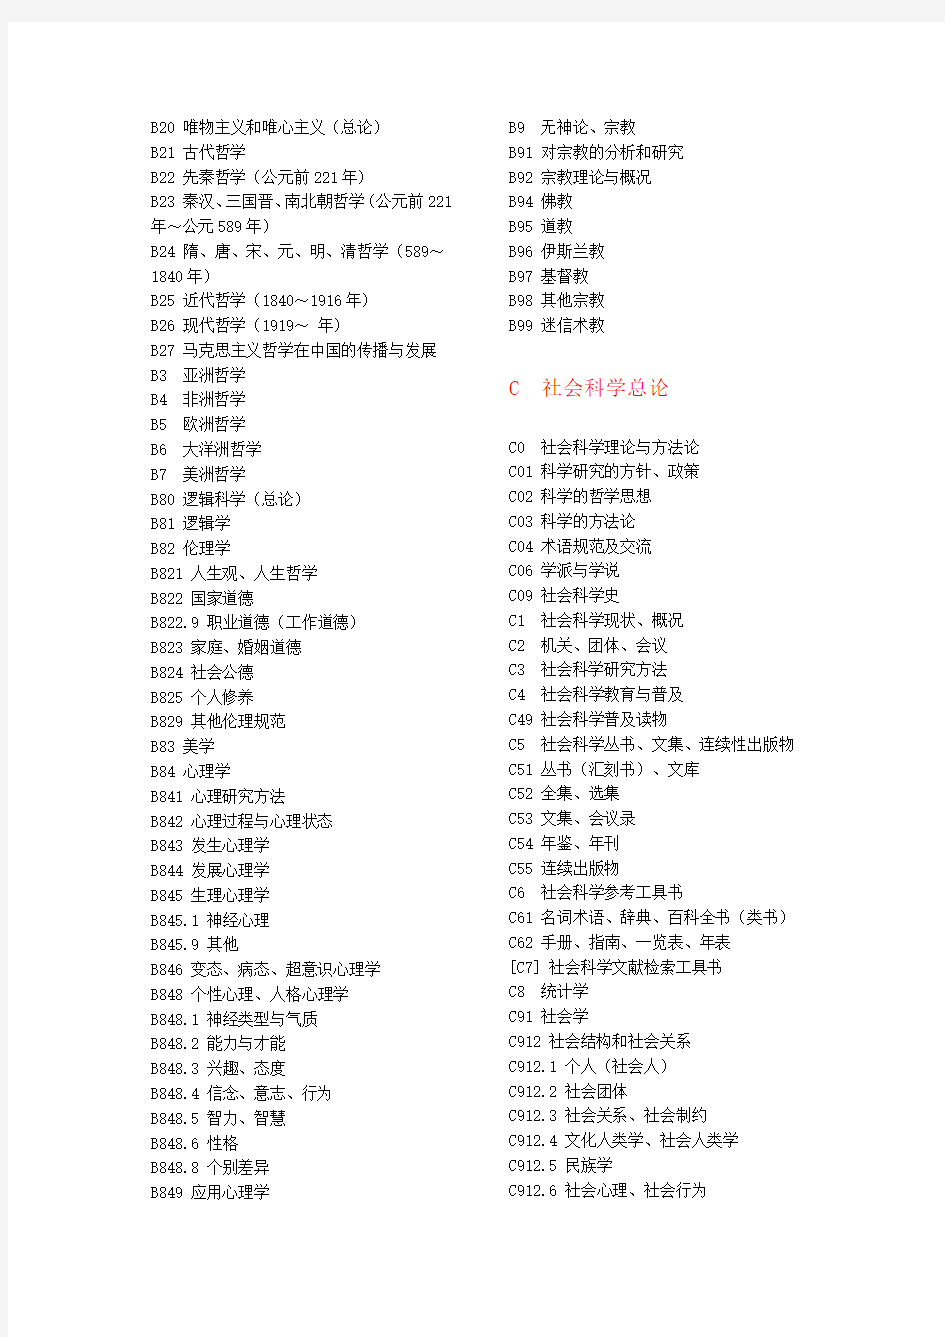 《中国图书馆图书分类法》(第四版)类目简表